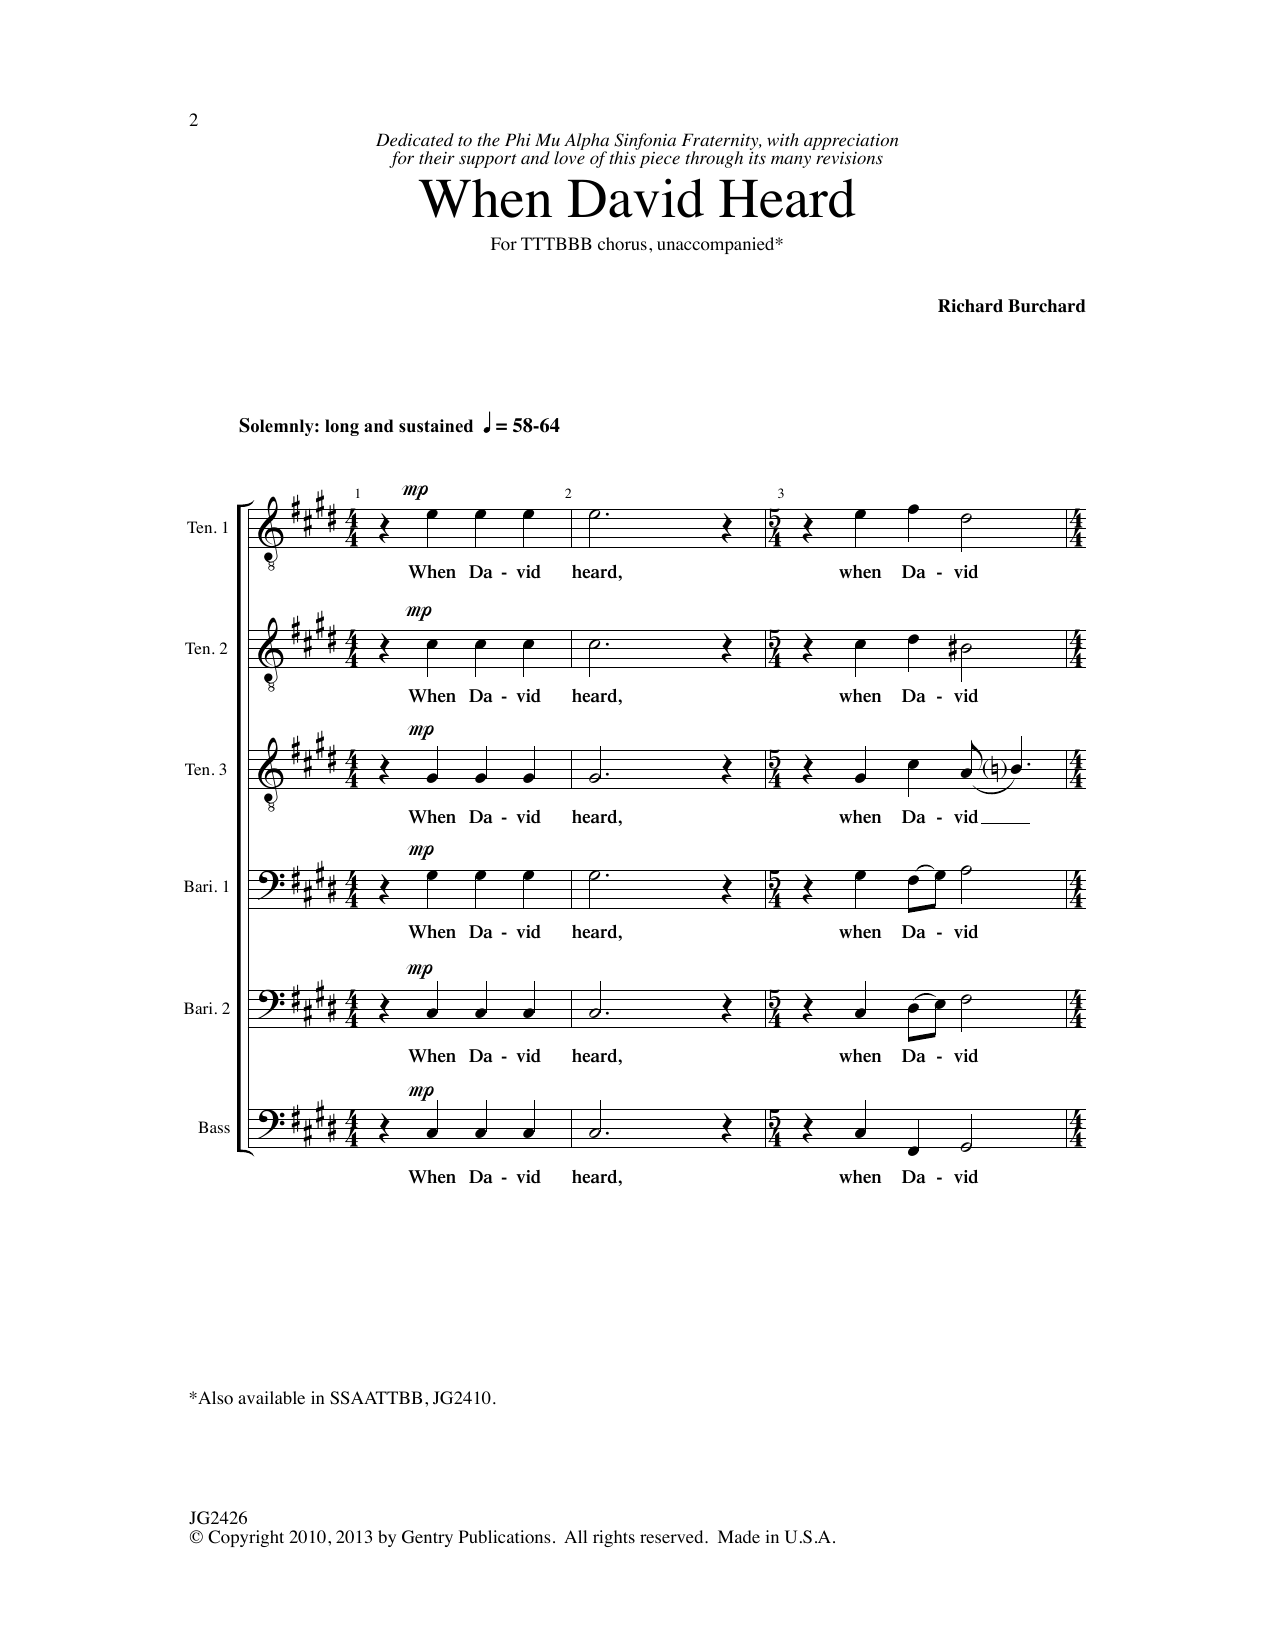 Richard Burchard When David Heard Sheet Music Notes & Chords for TTBB Choir - Download or Print PDF